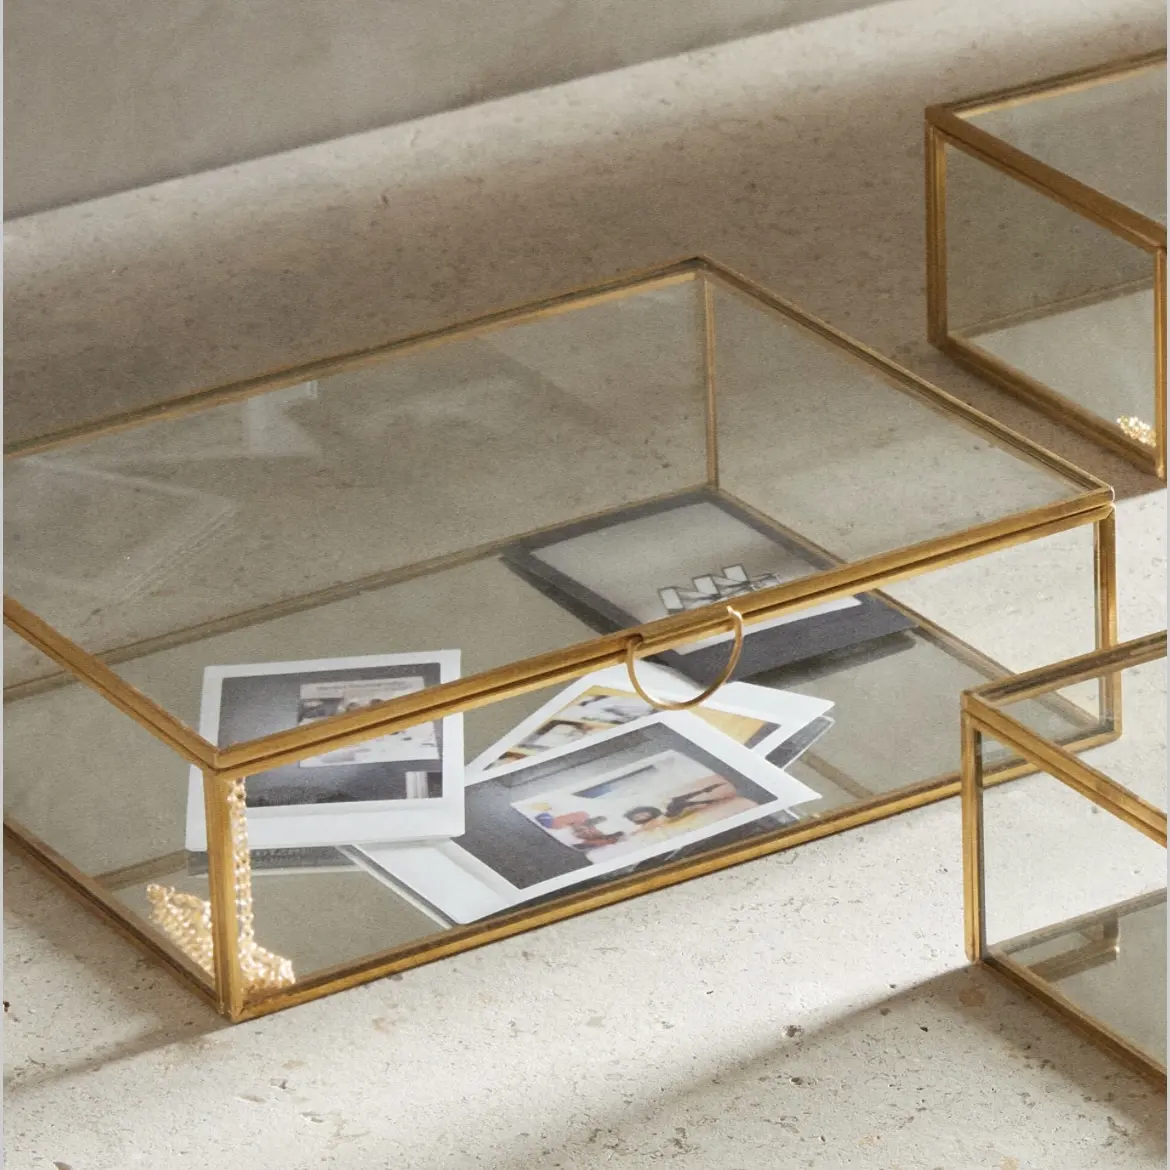 Glasbox mit goldenem Metallrahmen Einfacher eleganter Rand mit kleinem Metall griff zur Aufbewahrung und Organisation von Schmuck